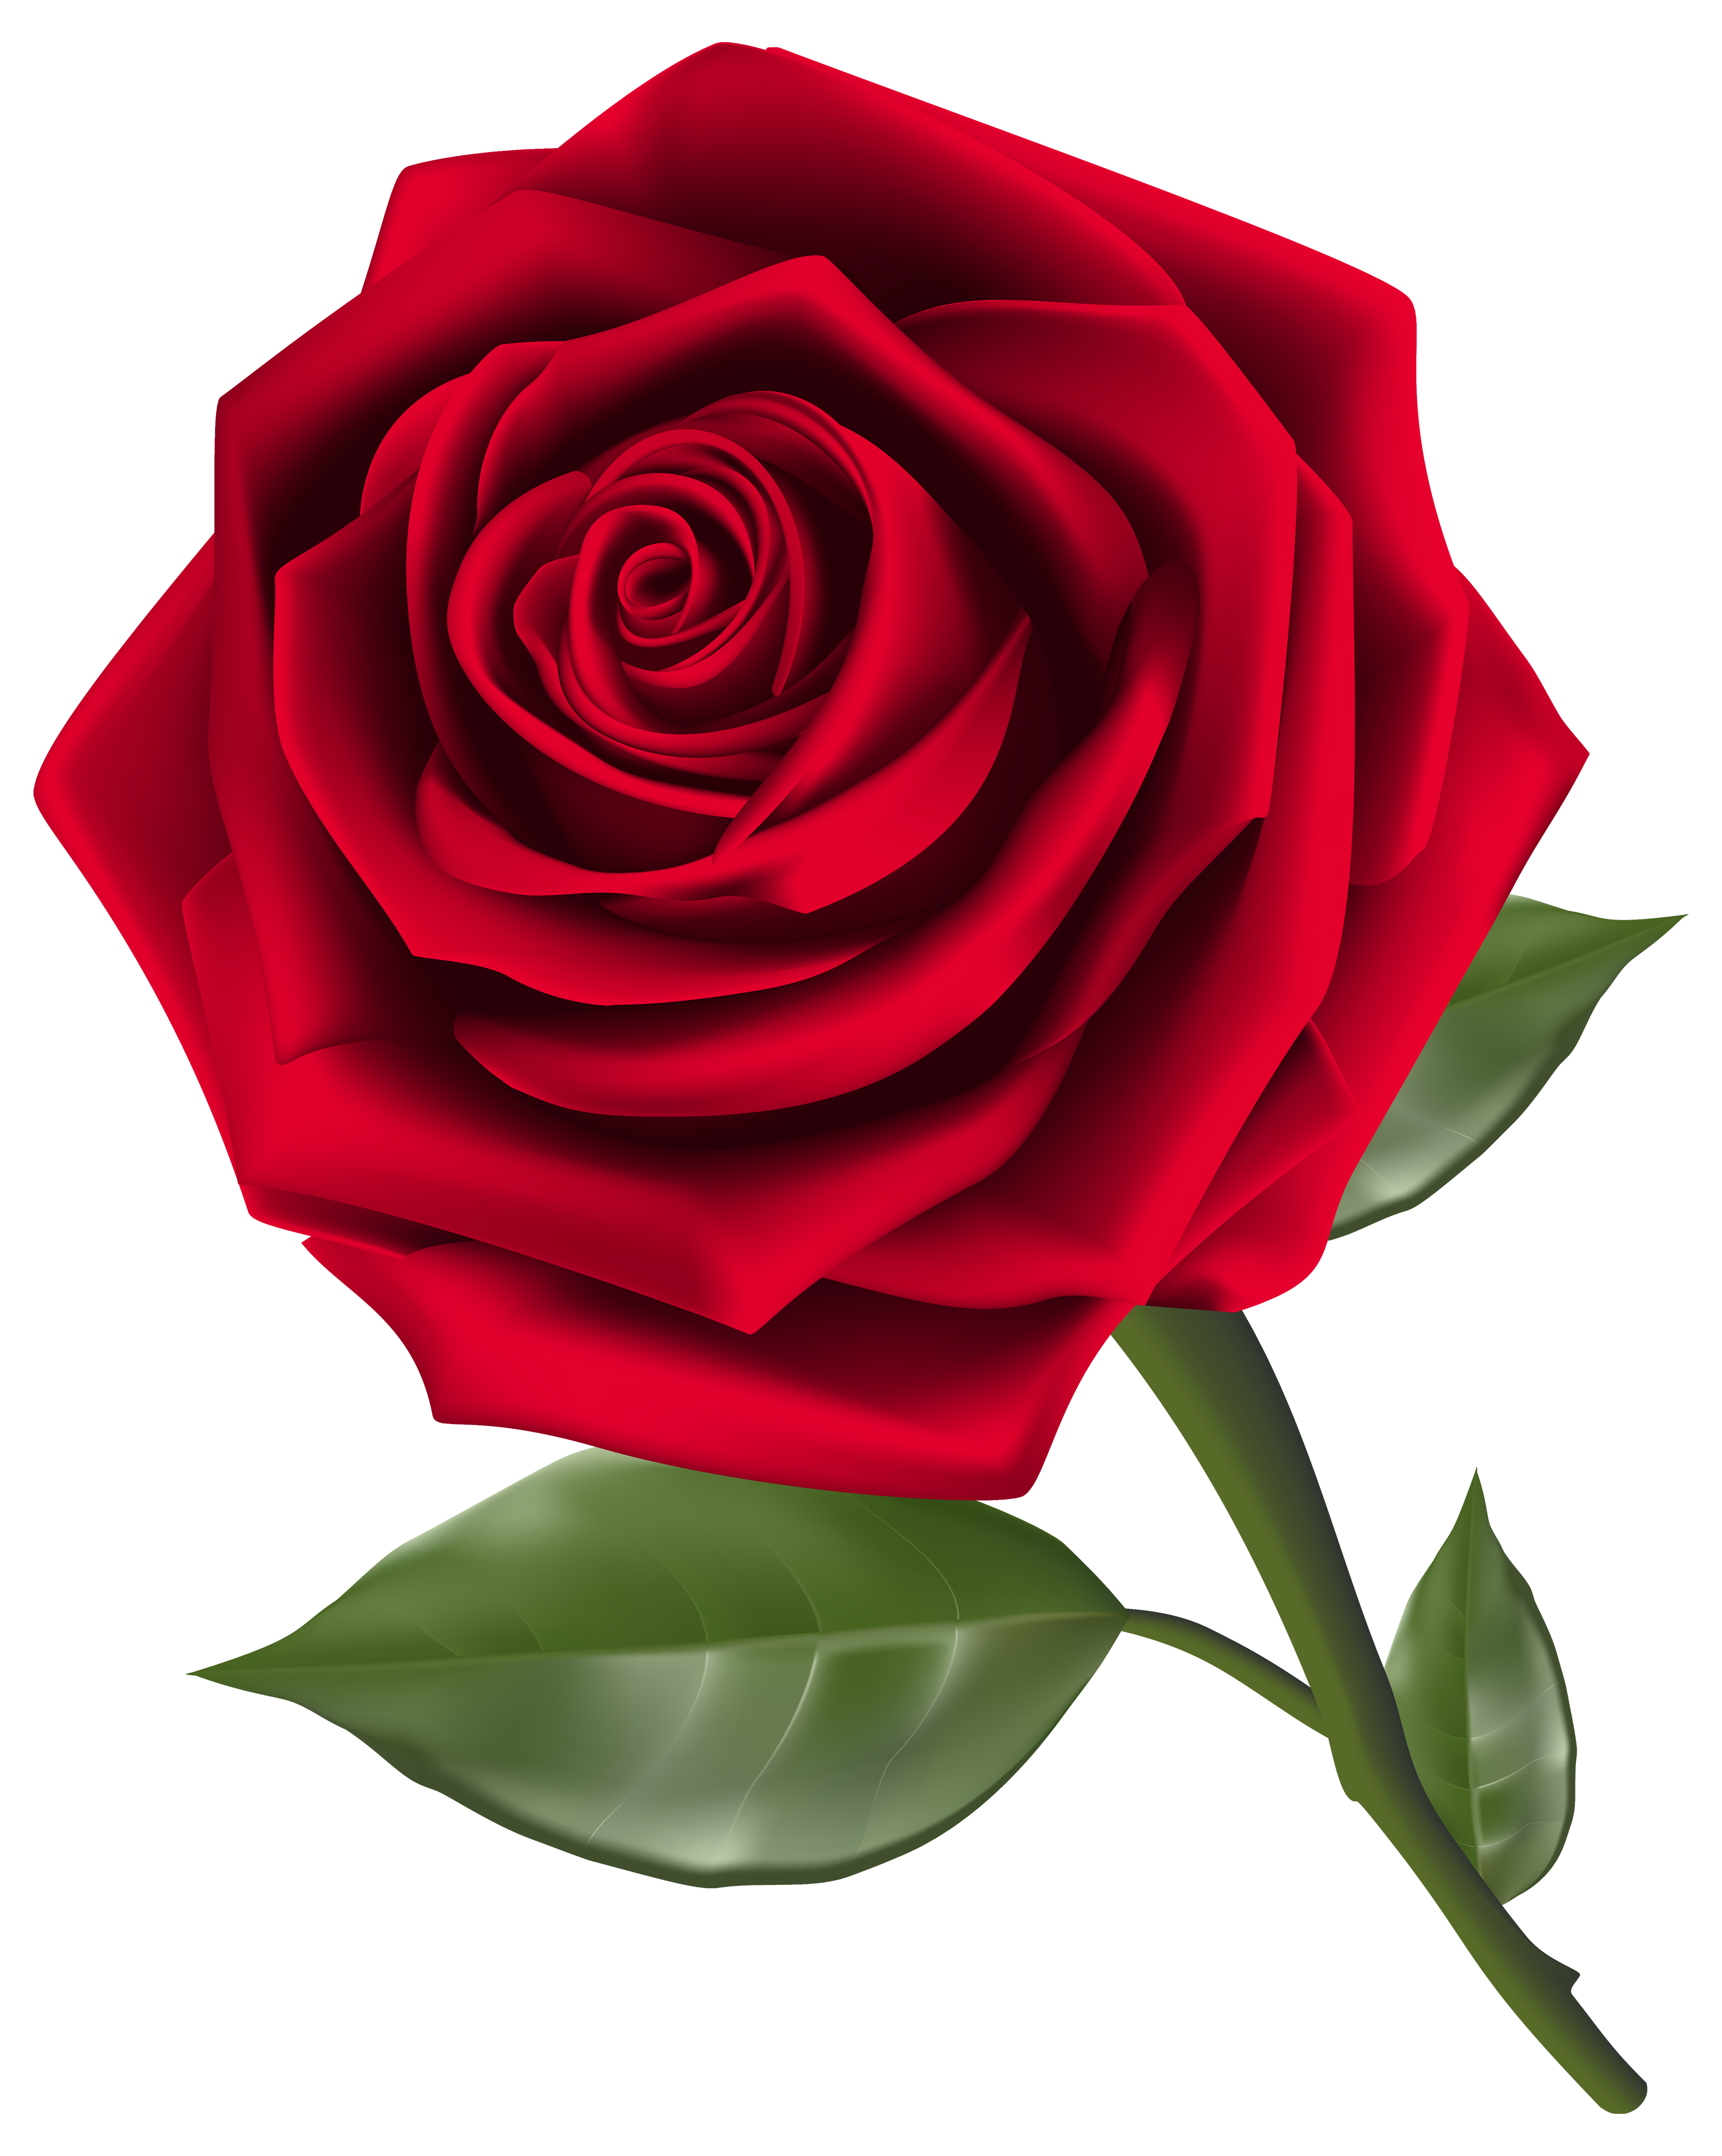 Beautiful red rose.